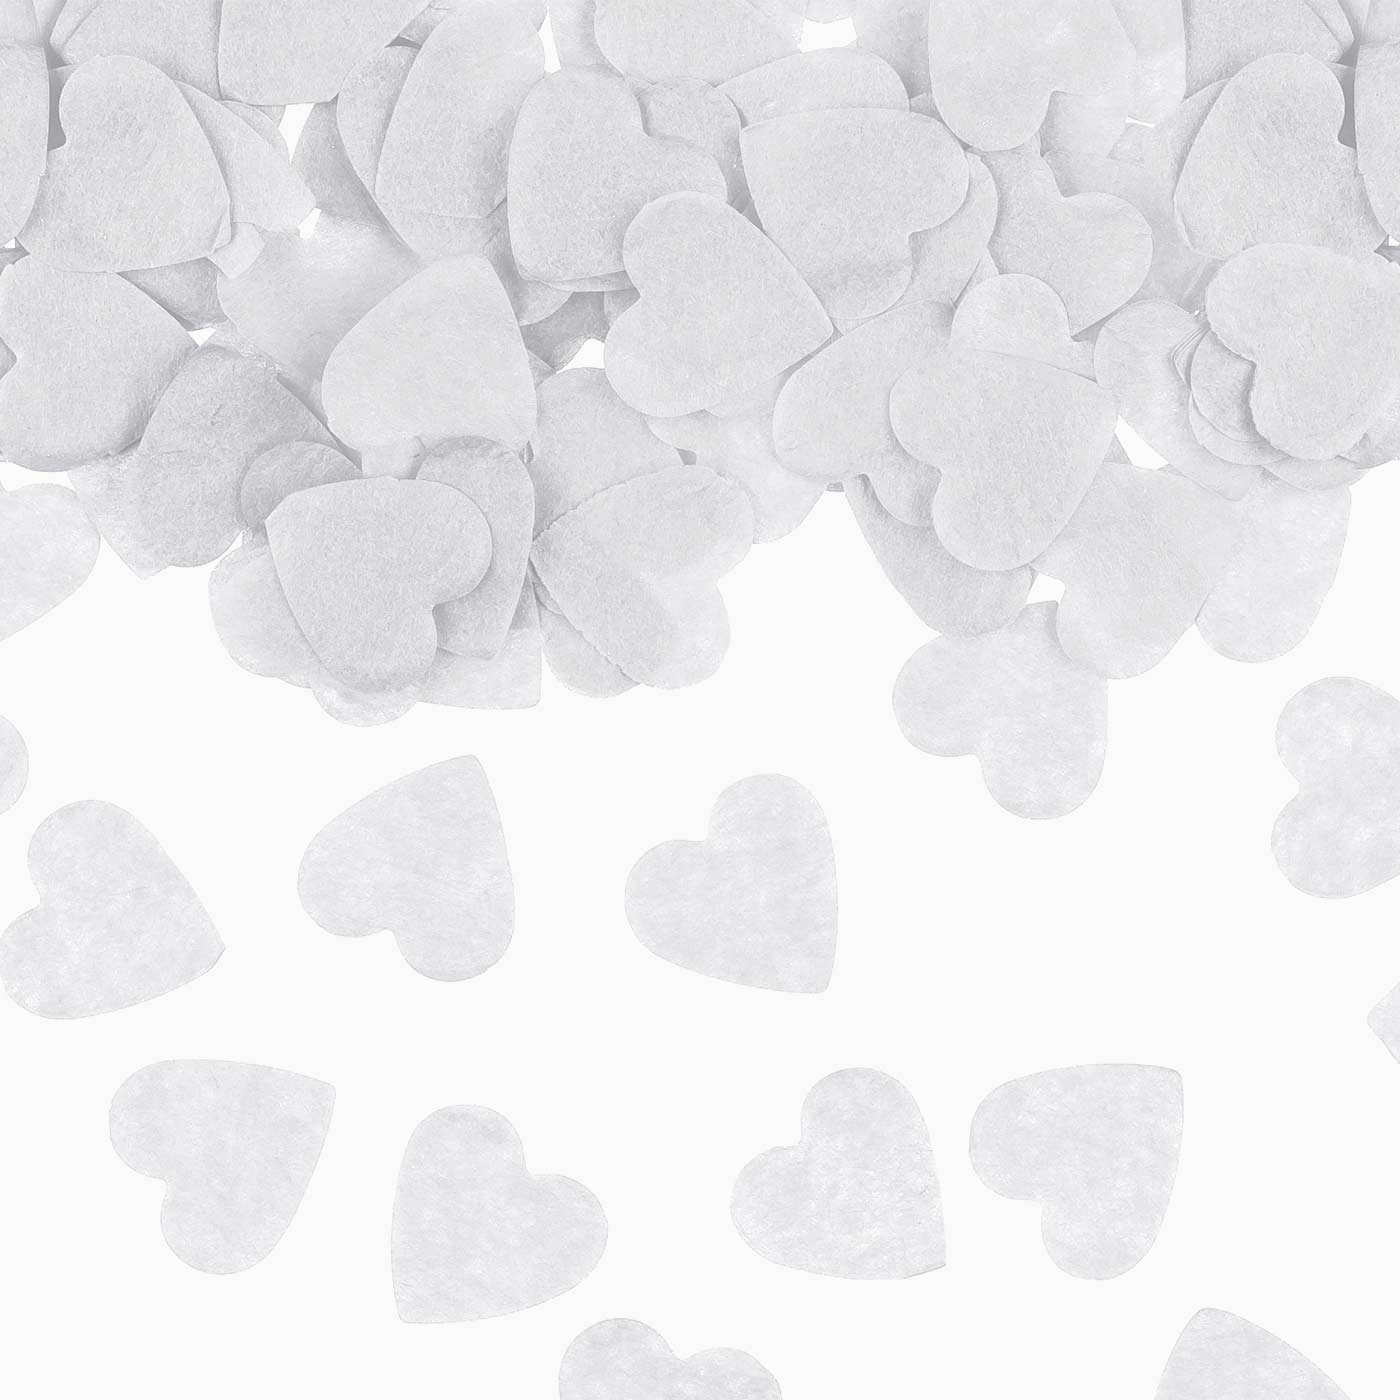 Blanco Heart Confetti